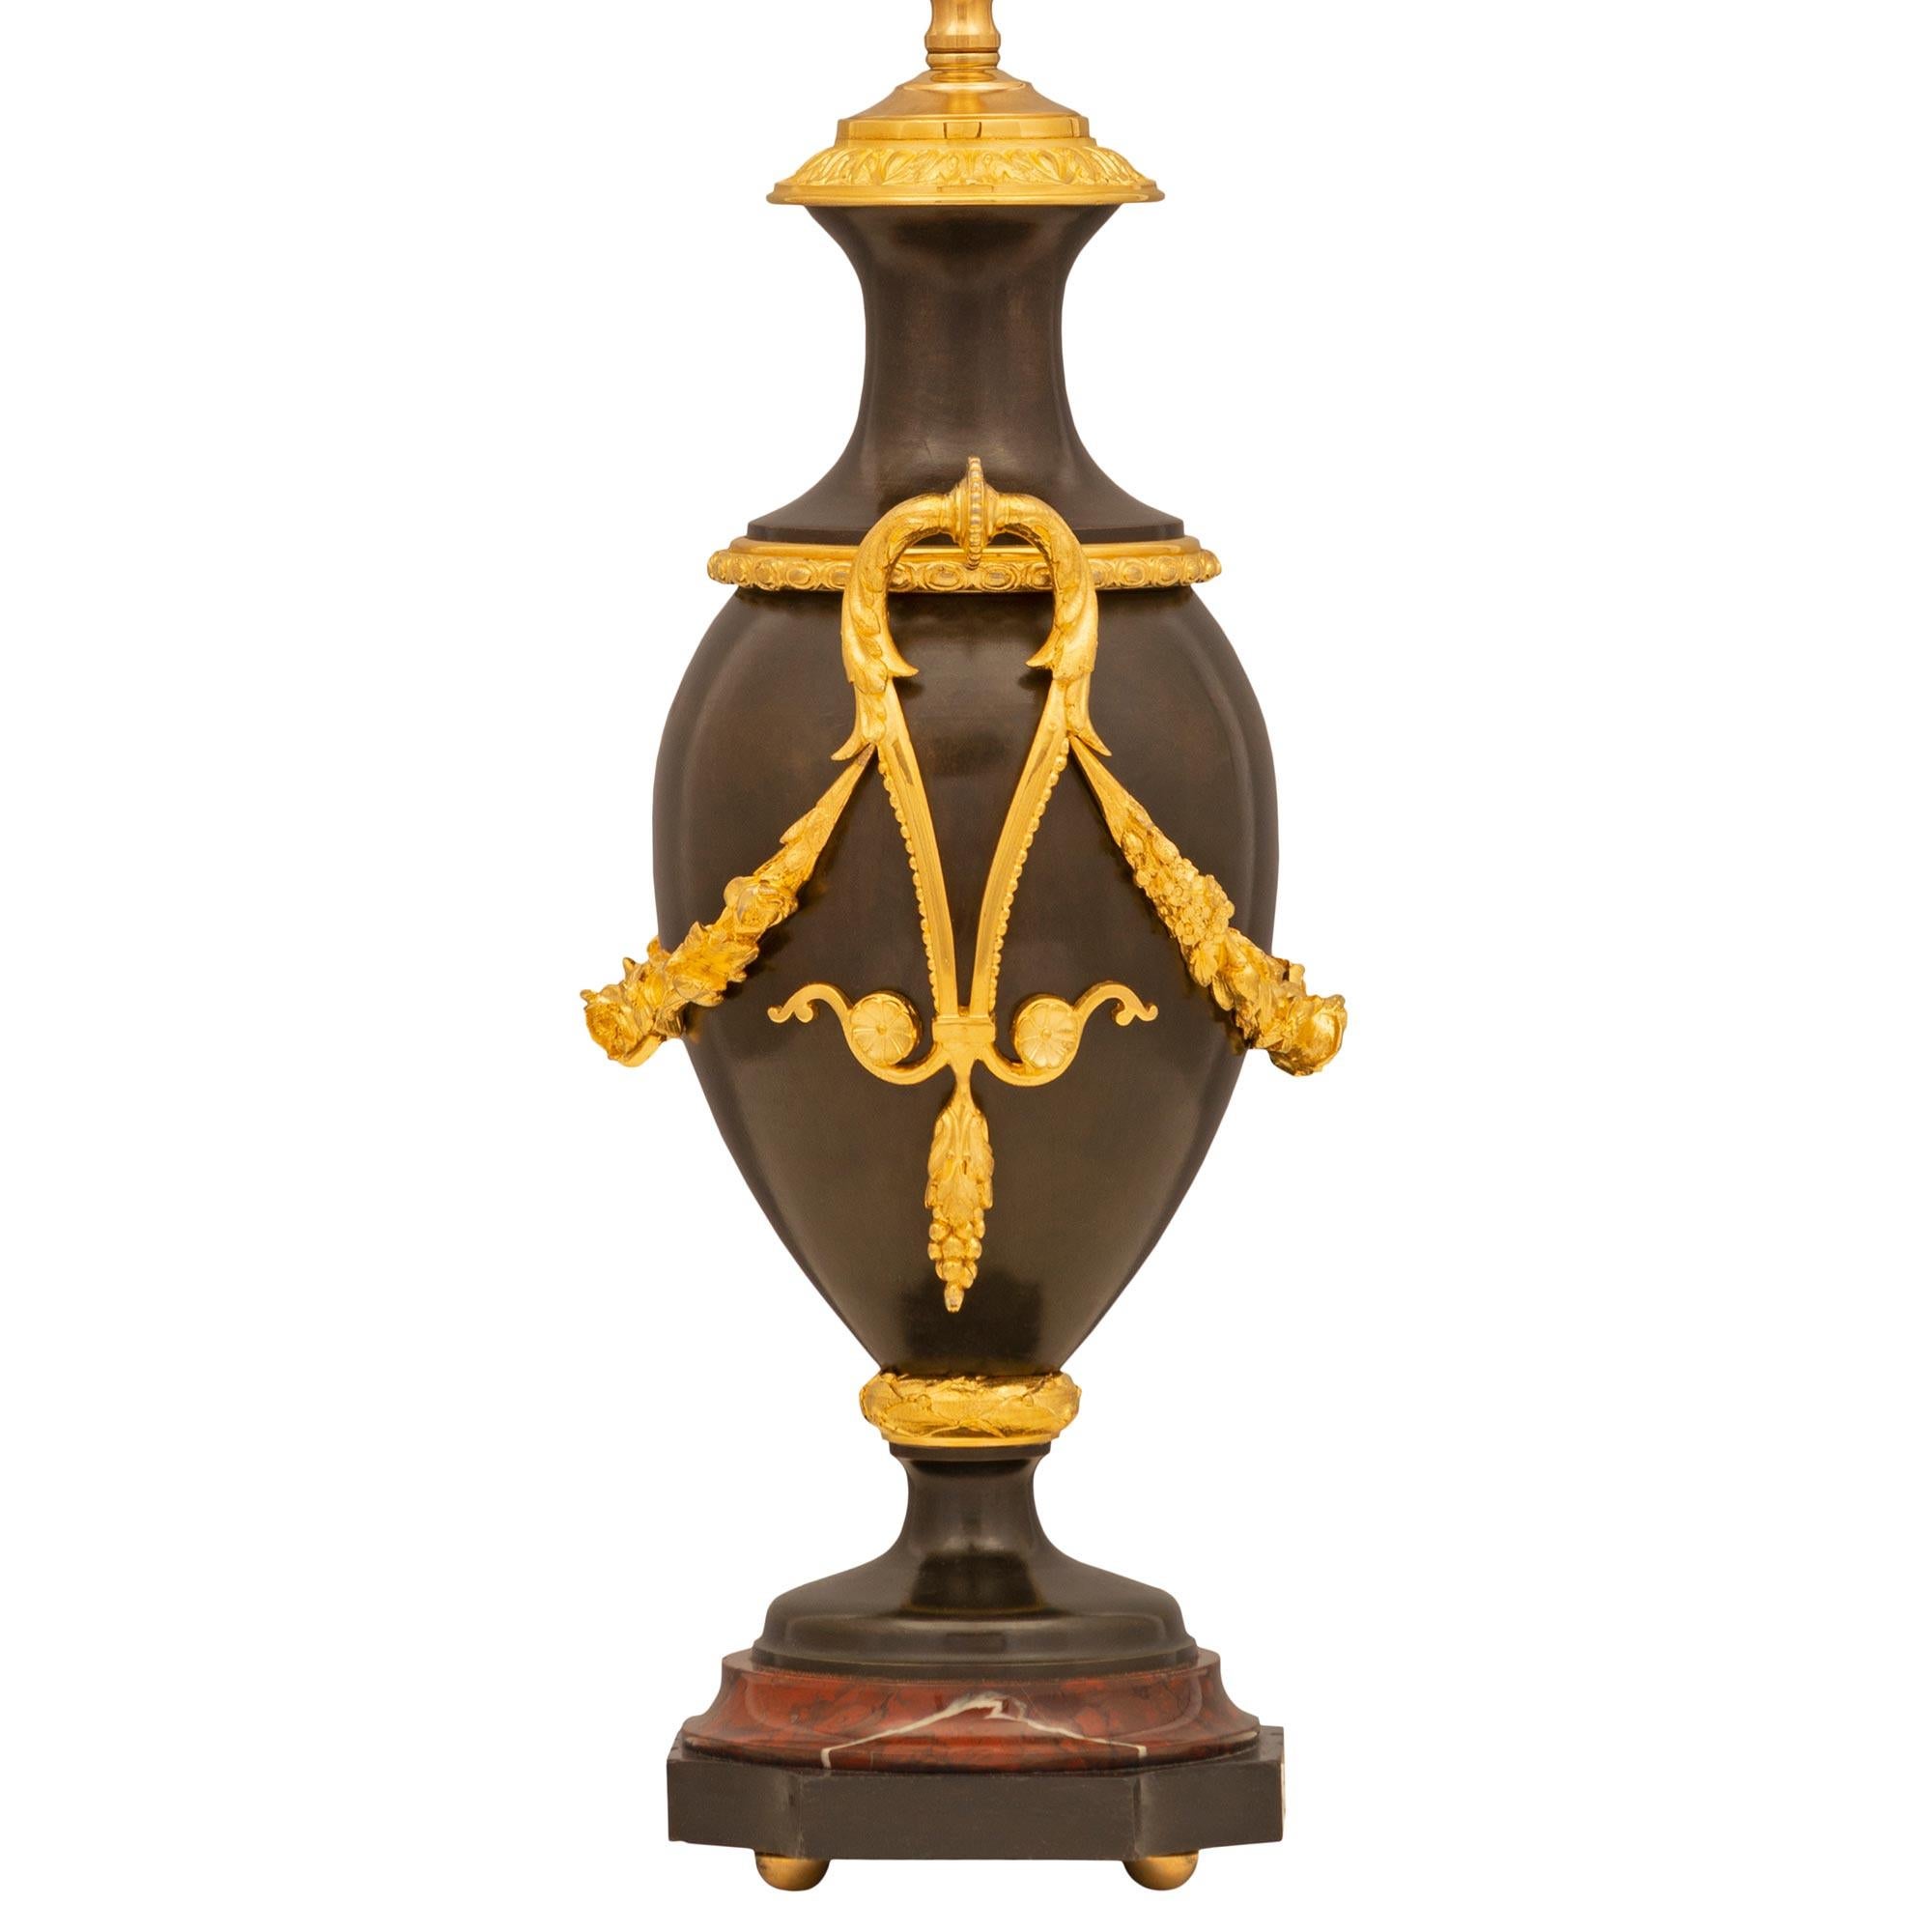 Une remarquable paire de lampes françaises du 19ème siècle, de style Louis XVI, en bronze patiné, bronze doré et marbre Rouge Griotte. Chaque lampe est surélevée par d'élégants pieds à boule en bronze doré sous la base carrée en bronze patiné avec